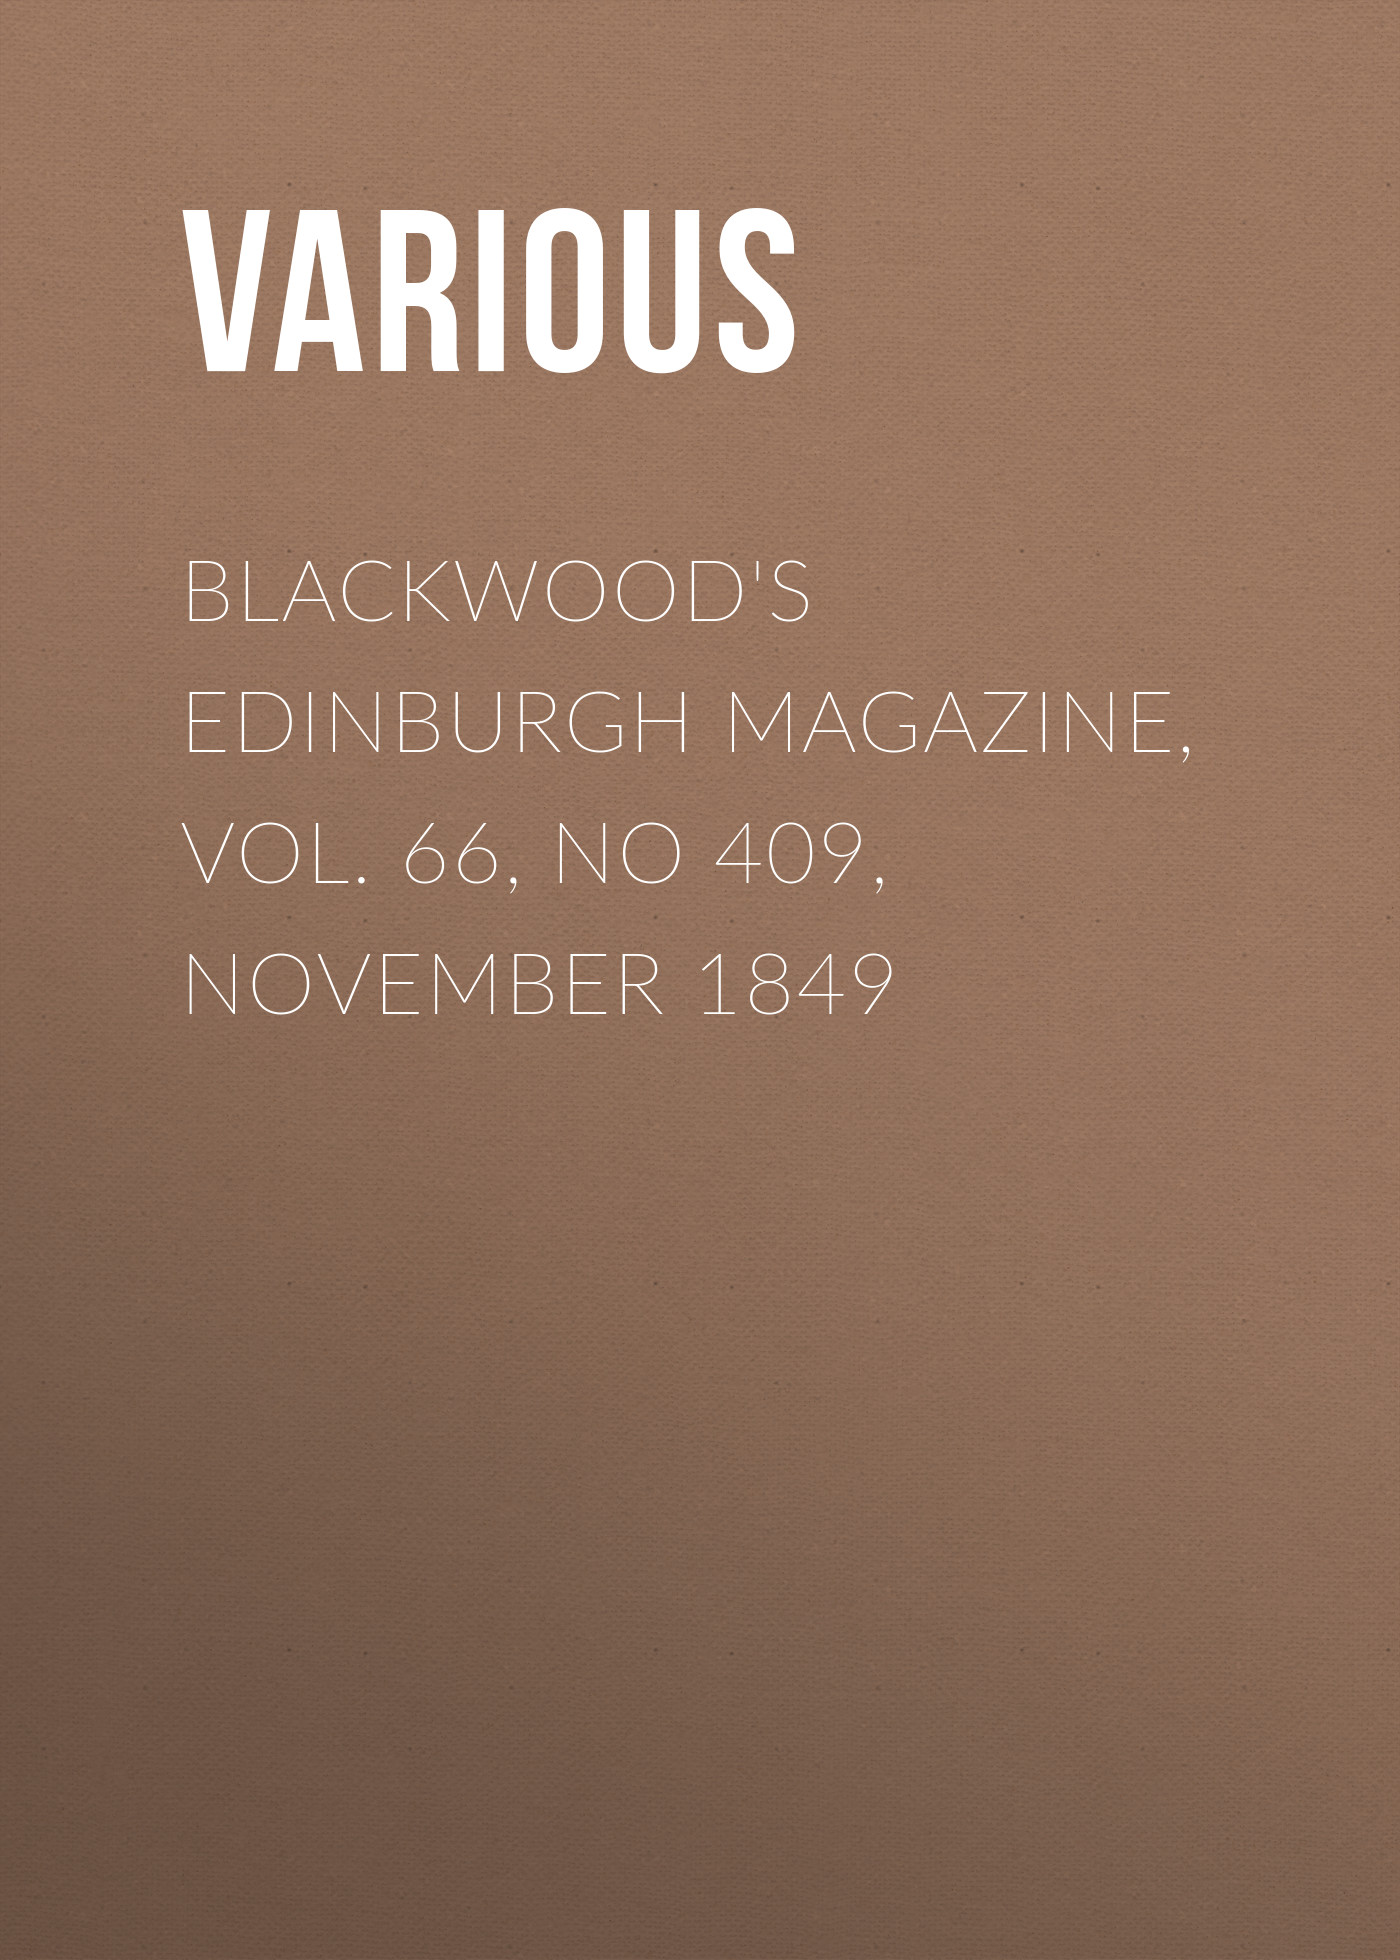 Книга Blackwood's Edinburgh Magazine, Vol. 66, No 409, November 1849 из серии , созданная  Various, может относится к жанру Журналы, Зарубежная образовательная литература, Книги о Путешествиях. Стоимость электронной книги Blackwood's Edinburgh Magazine, Vol. 66, No 409, November 1849 с идентификатором 25569399 составляет 0 руб.